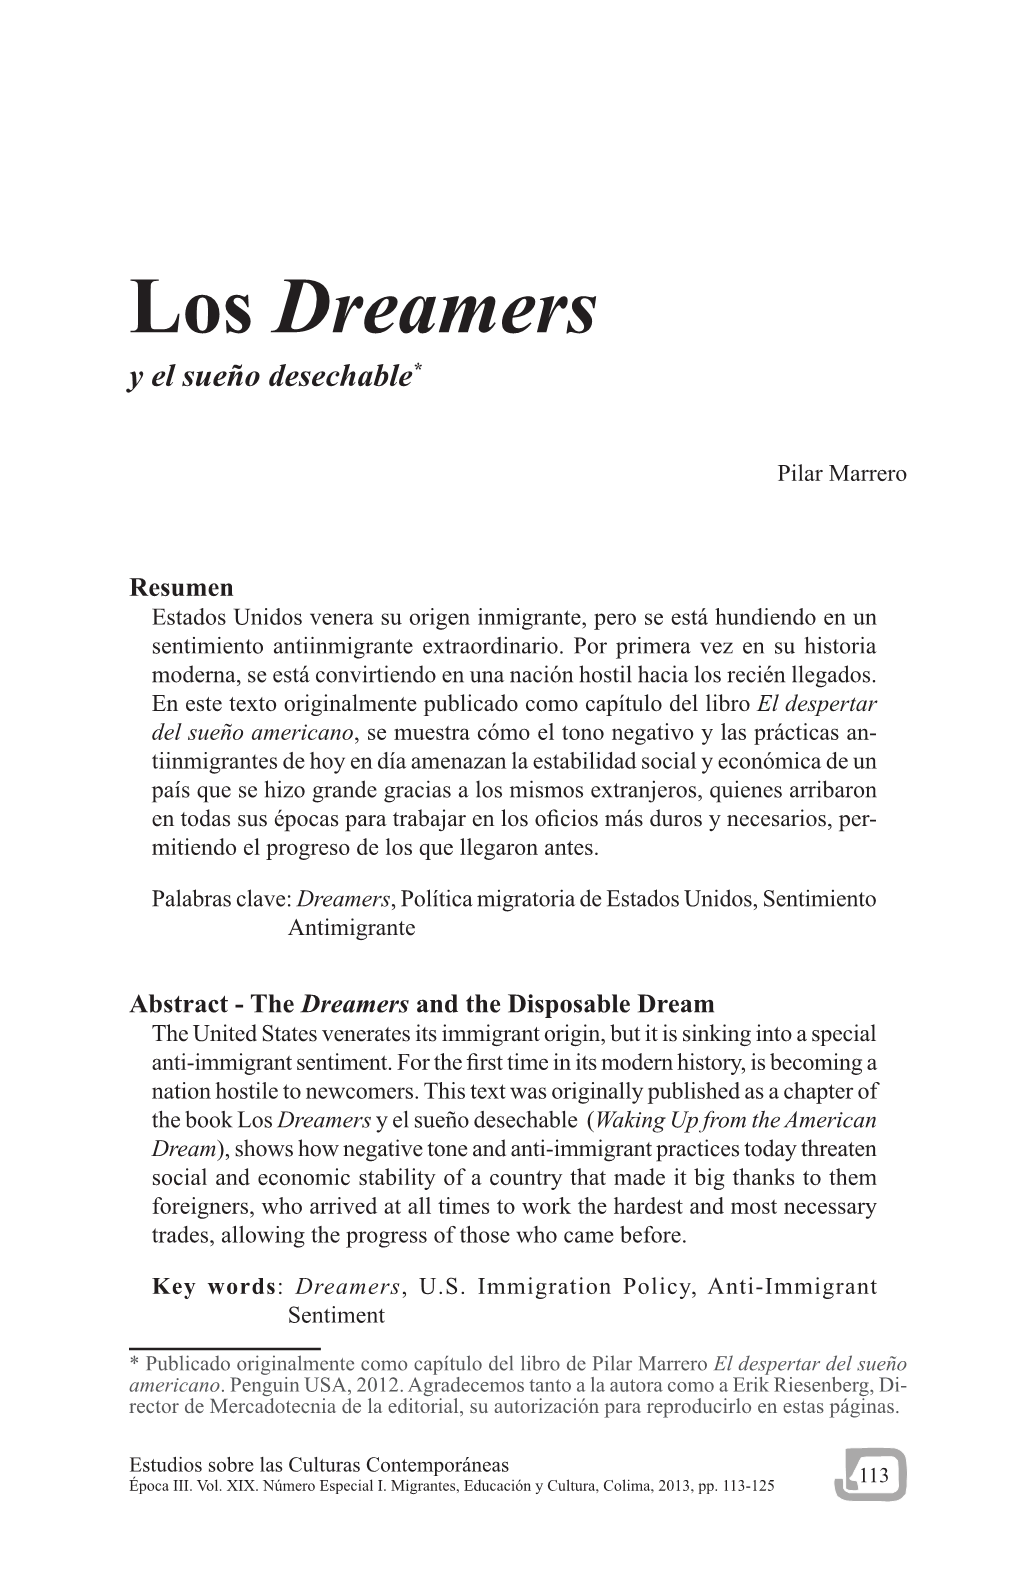 Los Dreamers Y El Sueño Desechable*